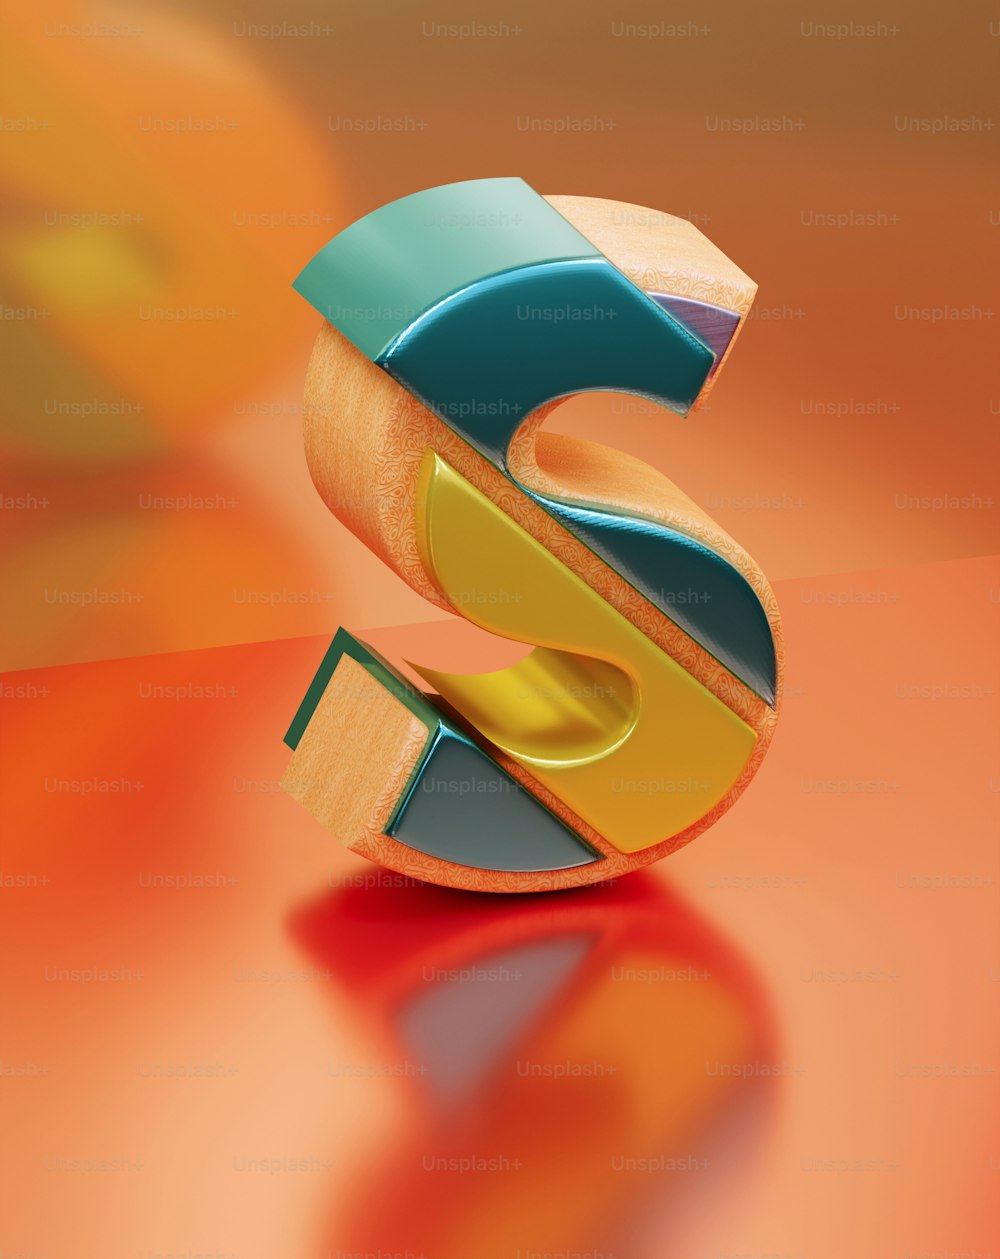 Un'immagine 3D della lettera S su un tavolo